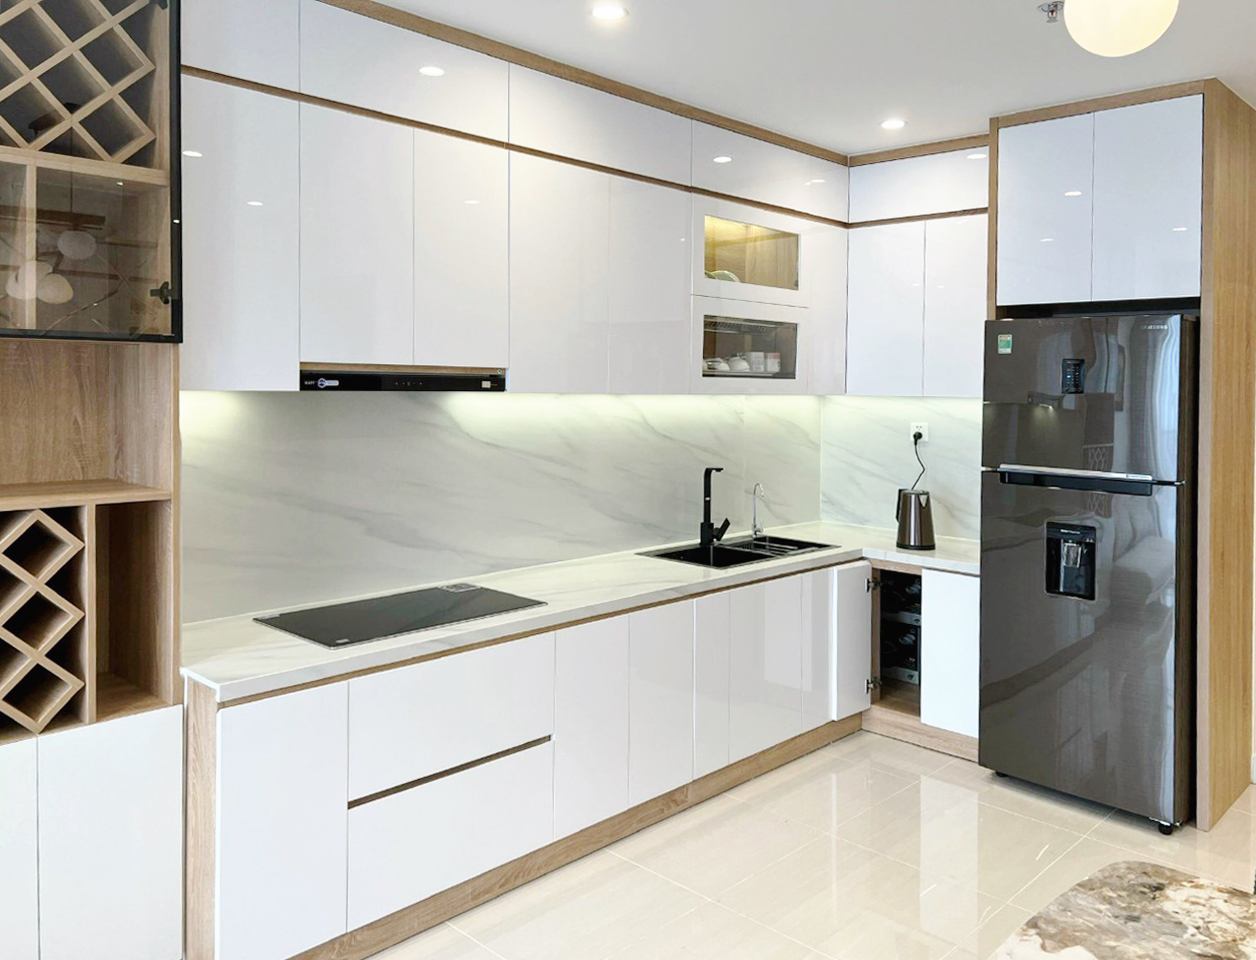 Hoàn thiện nội thất phòng bếp Căn hộ Tòa S10.03 The Origami Vinhomes phong cách Bắc Âu Scandinavian, phong cách Hiện đại Modern